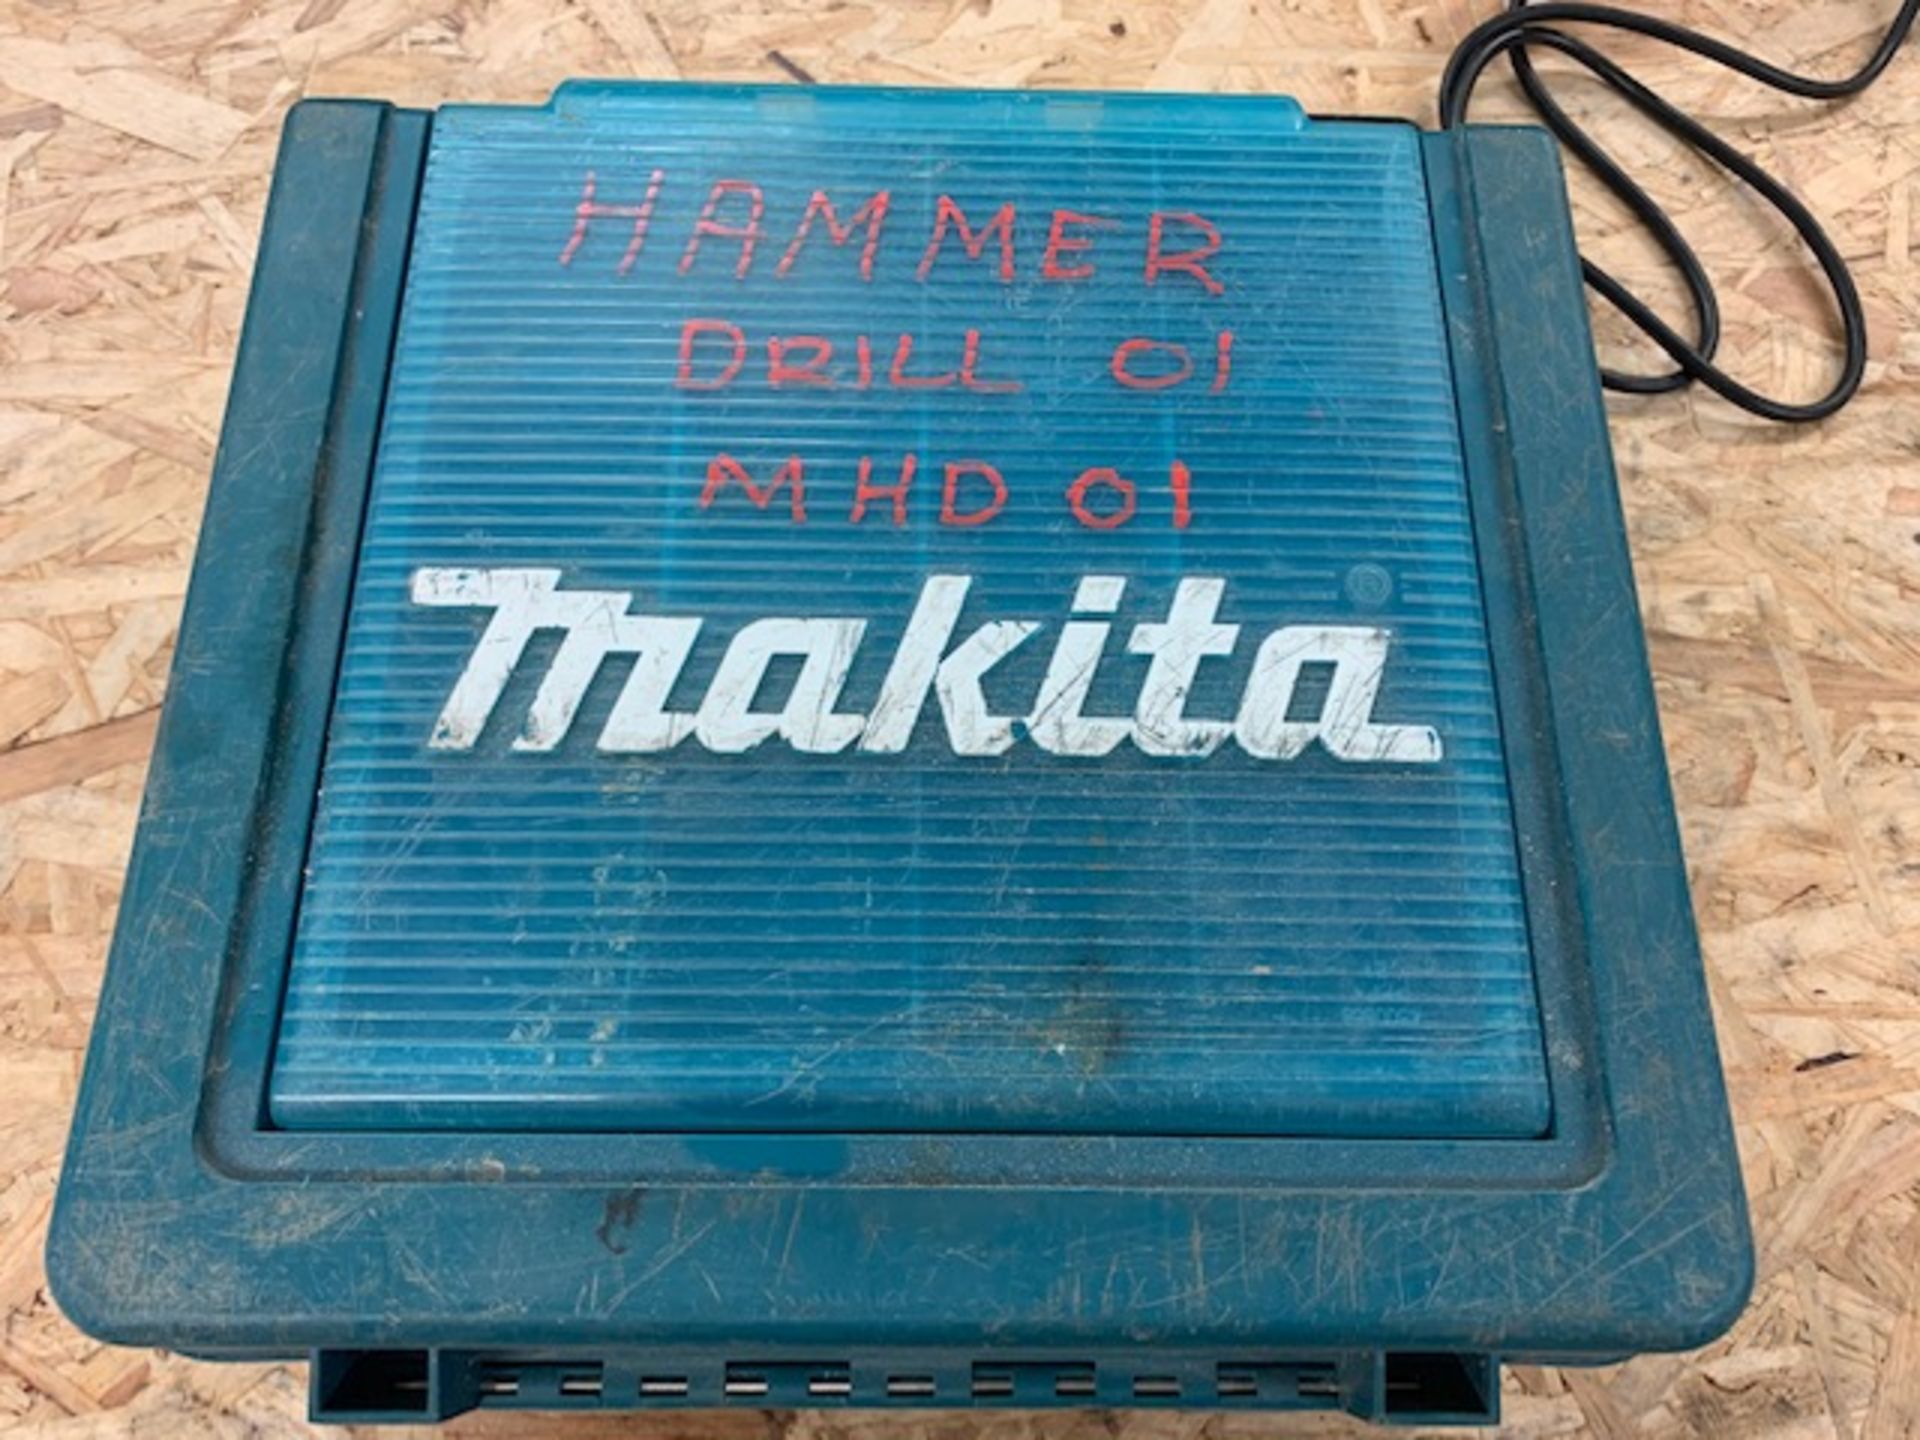 Makita HP1631 hammer drill 110v c/w case - Image 2 of 2